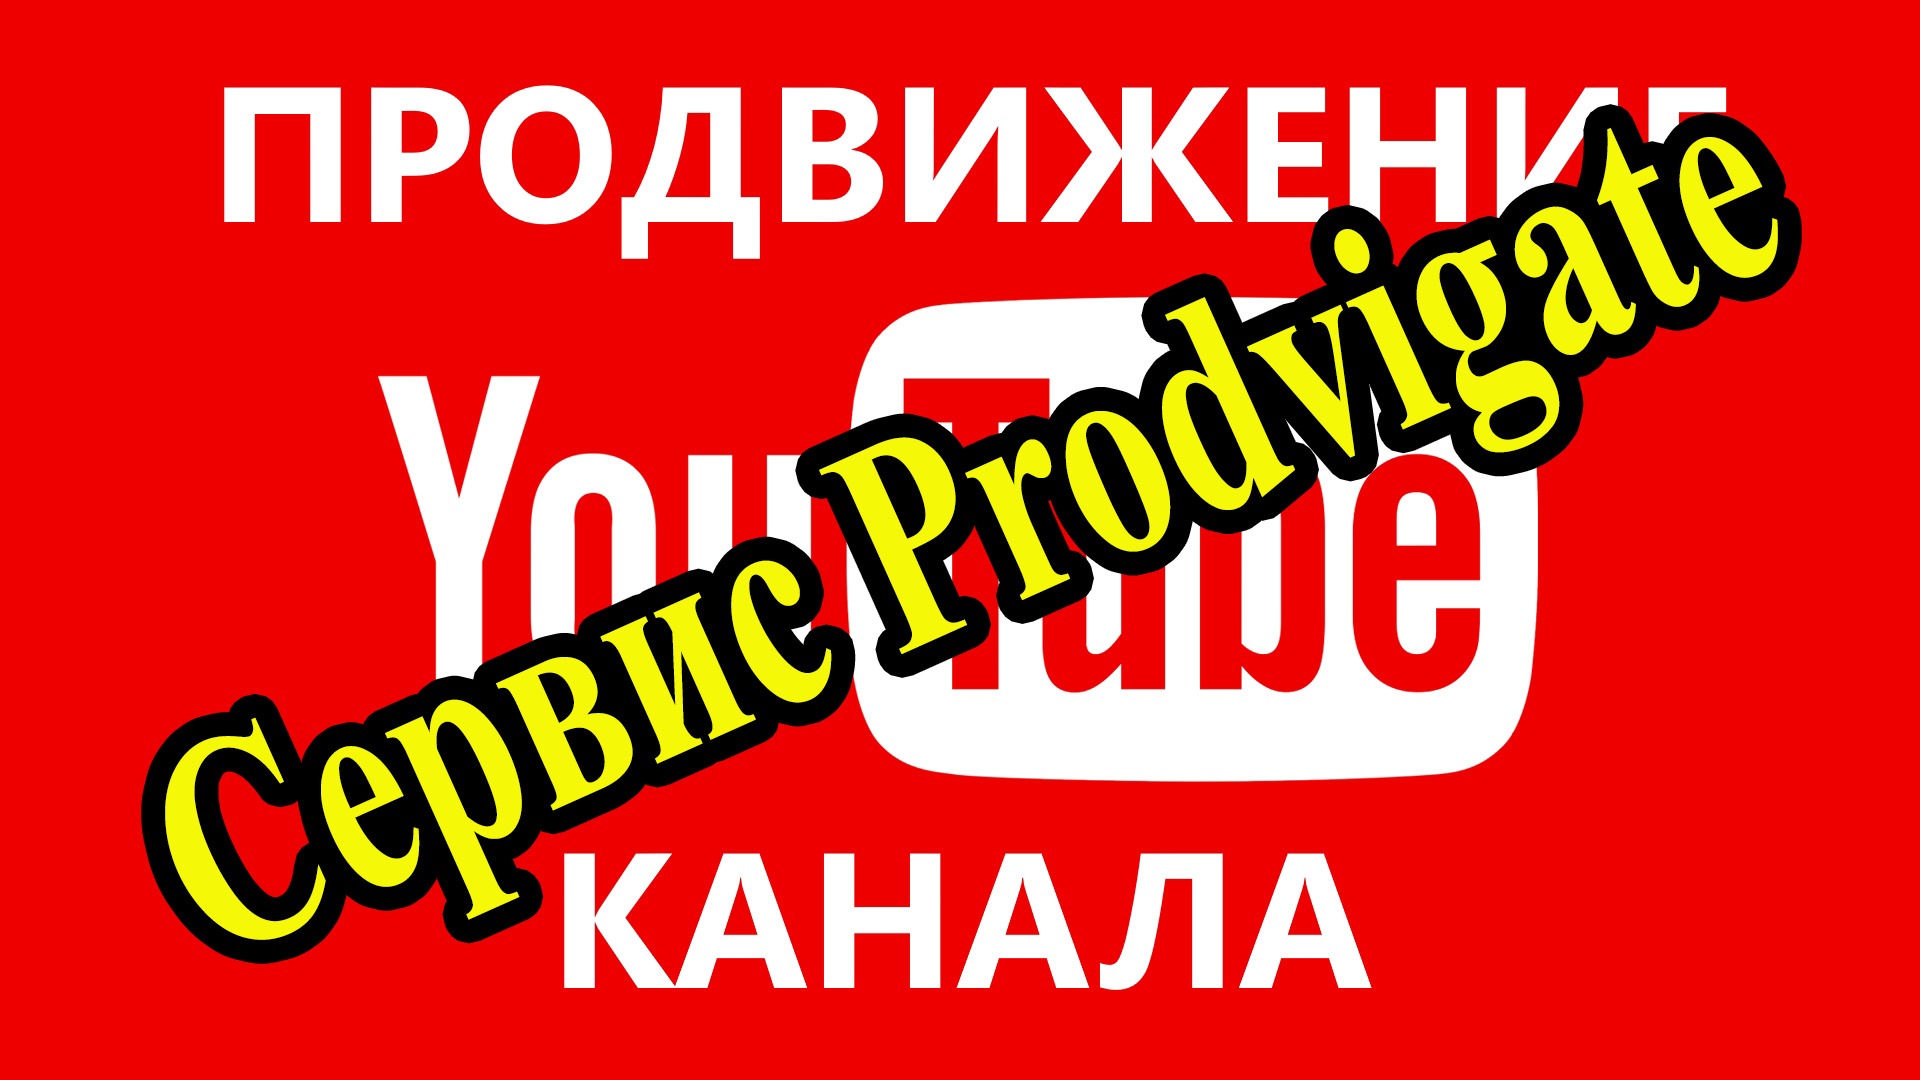 Продвижением видео и каналов YouTube с помощью Prodvigat